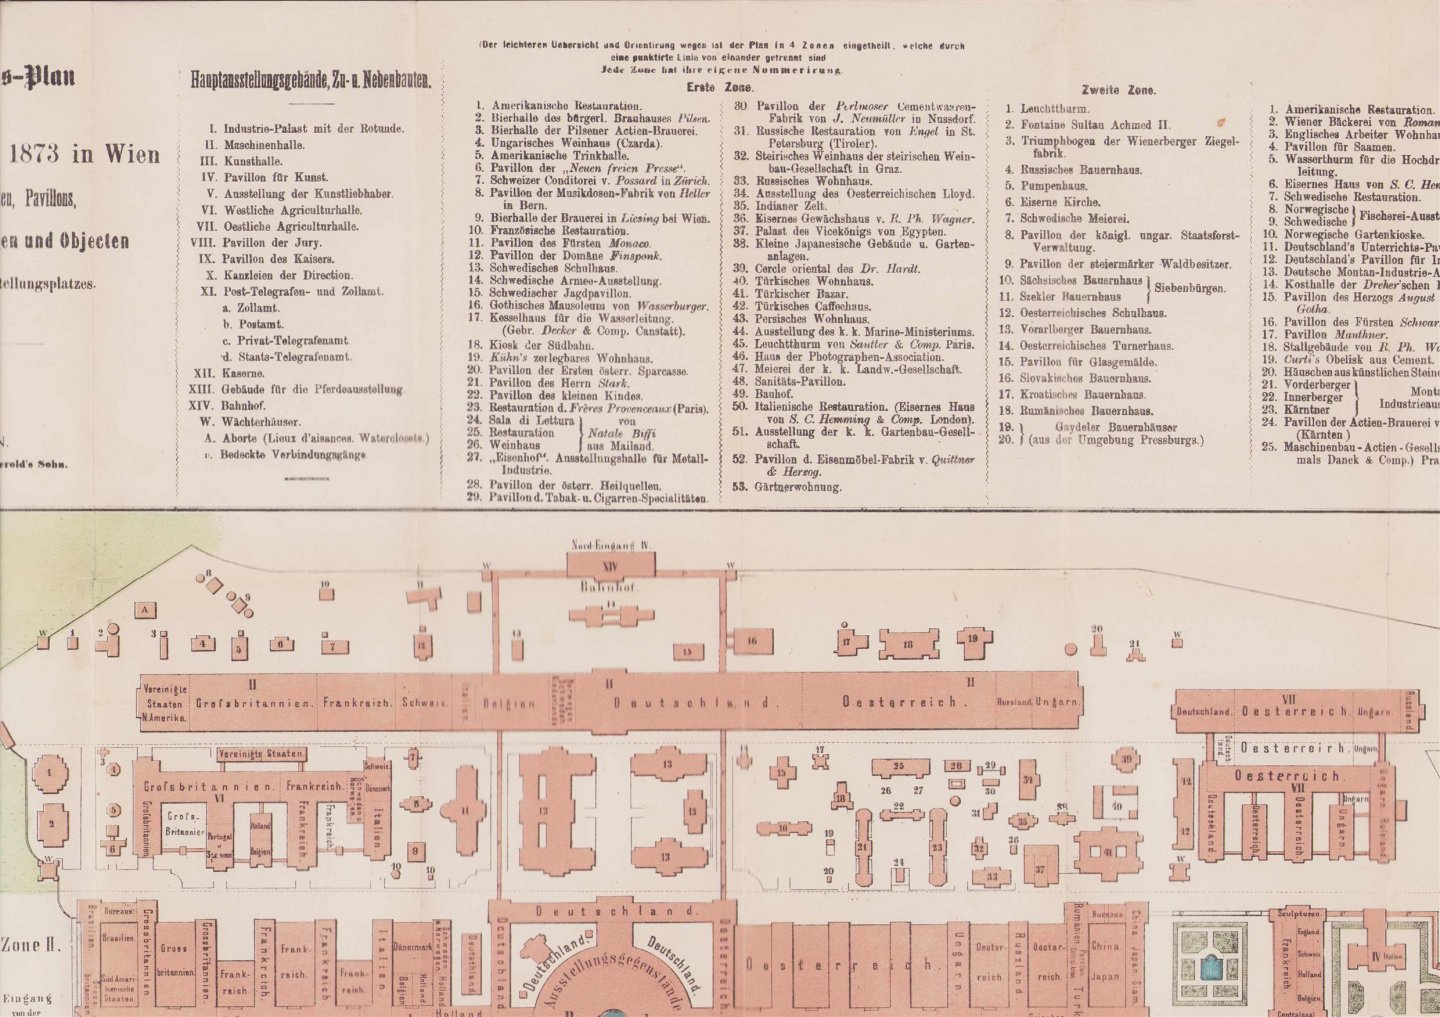 Carl Gerold - Situations-Plan der Weltausstellung 1873 in Wien, mit allen Haupt- und Nebengebäuden, Separatausstellungen und Objecten innerhalb des Ausstellungsplatzes.